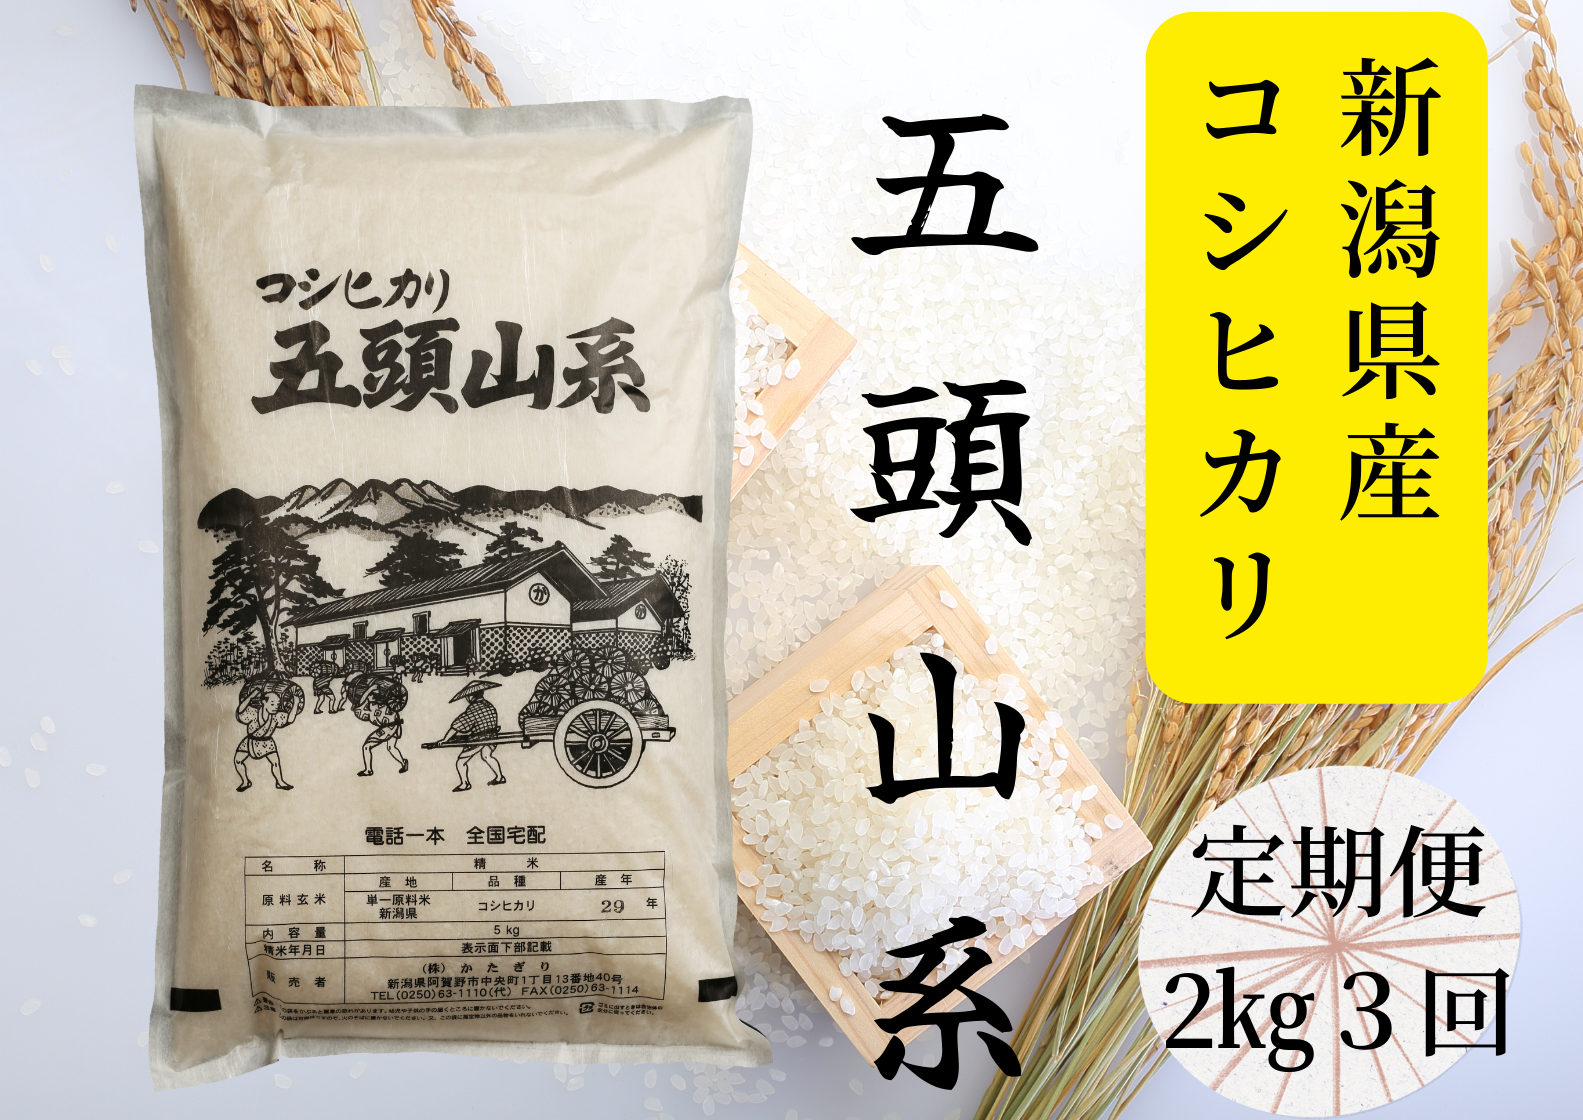 【3回定期便】「米屋のこだわり阿賀野市産」コシヒカリ2kg×3回 1E18015